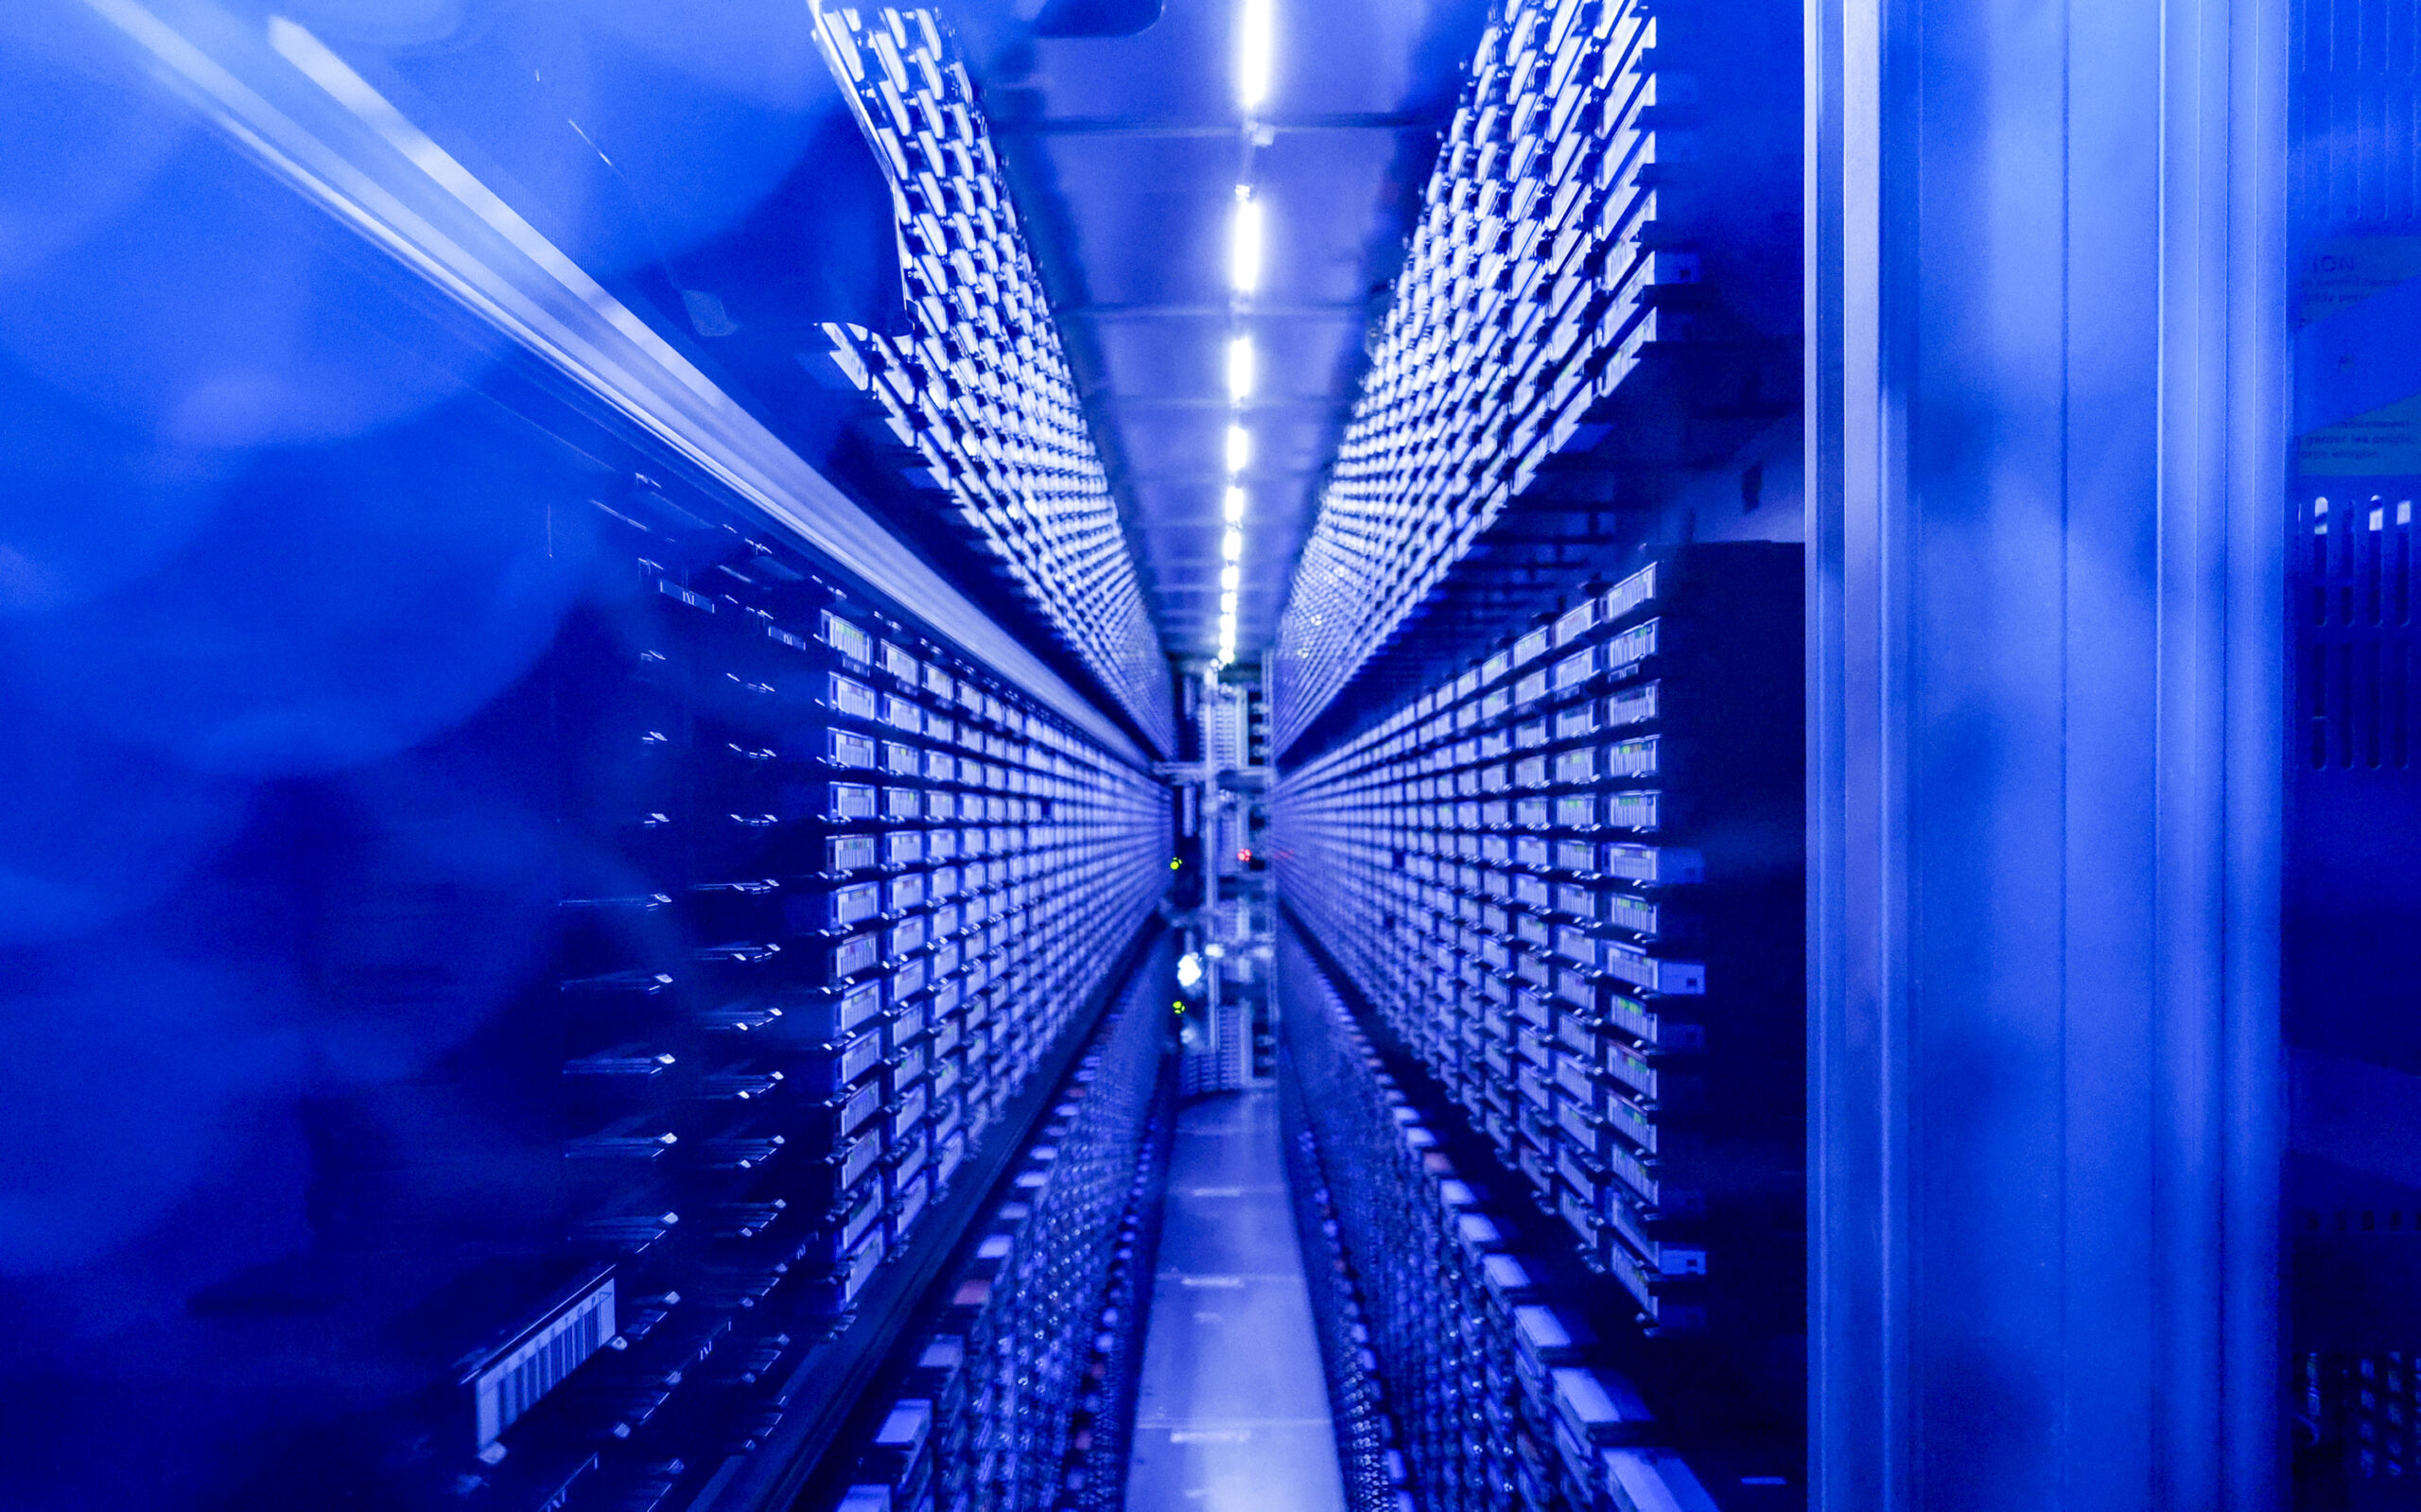 Festplattenstapel werden im neu eingeweihten Supercomputer "Levante" im DKRZ von blauen Lichtern illuminiert.